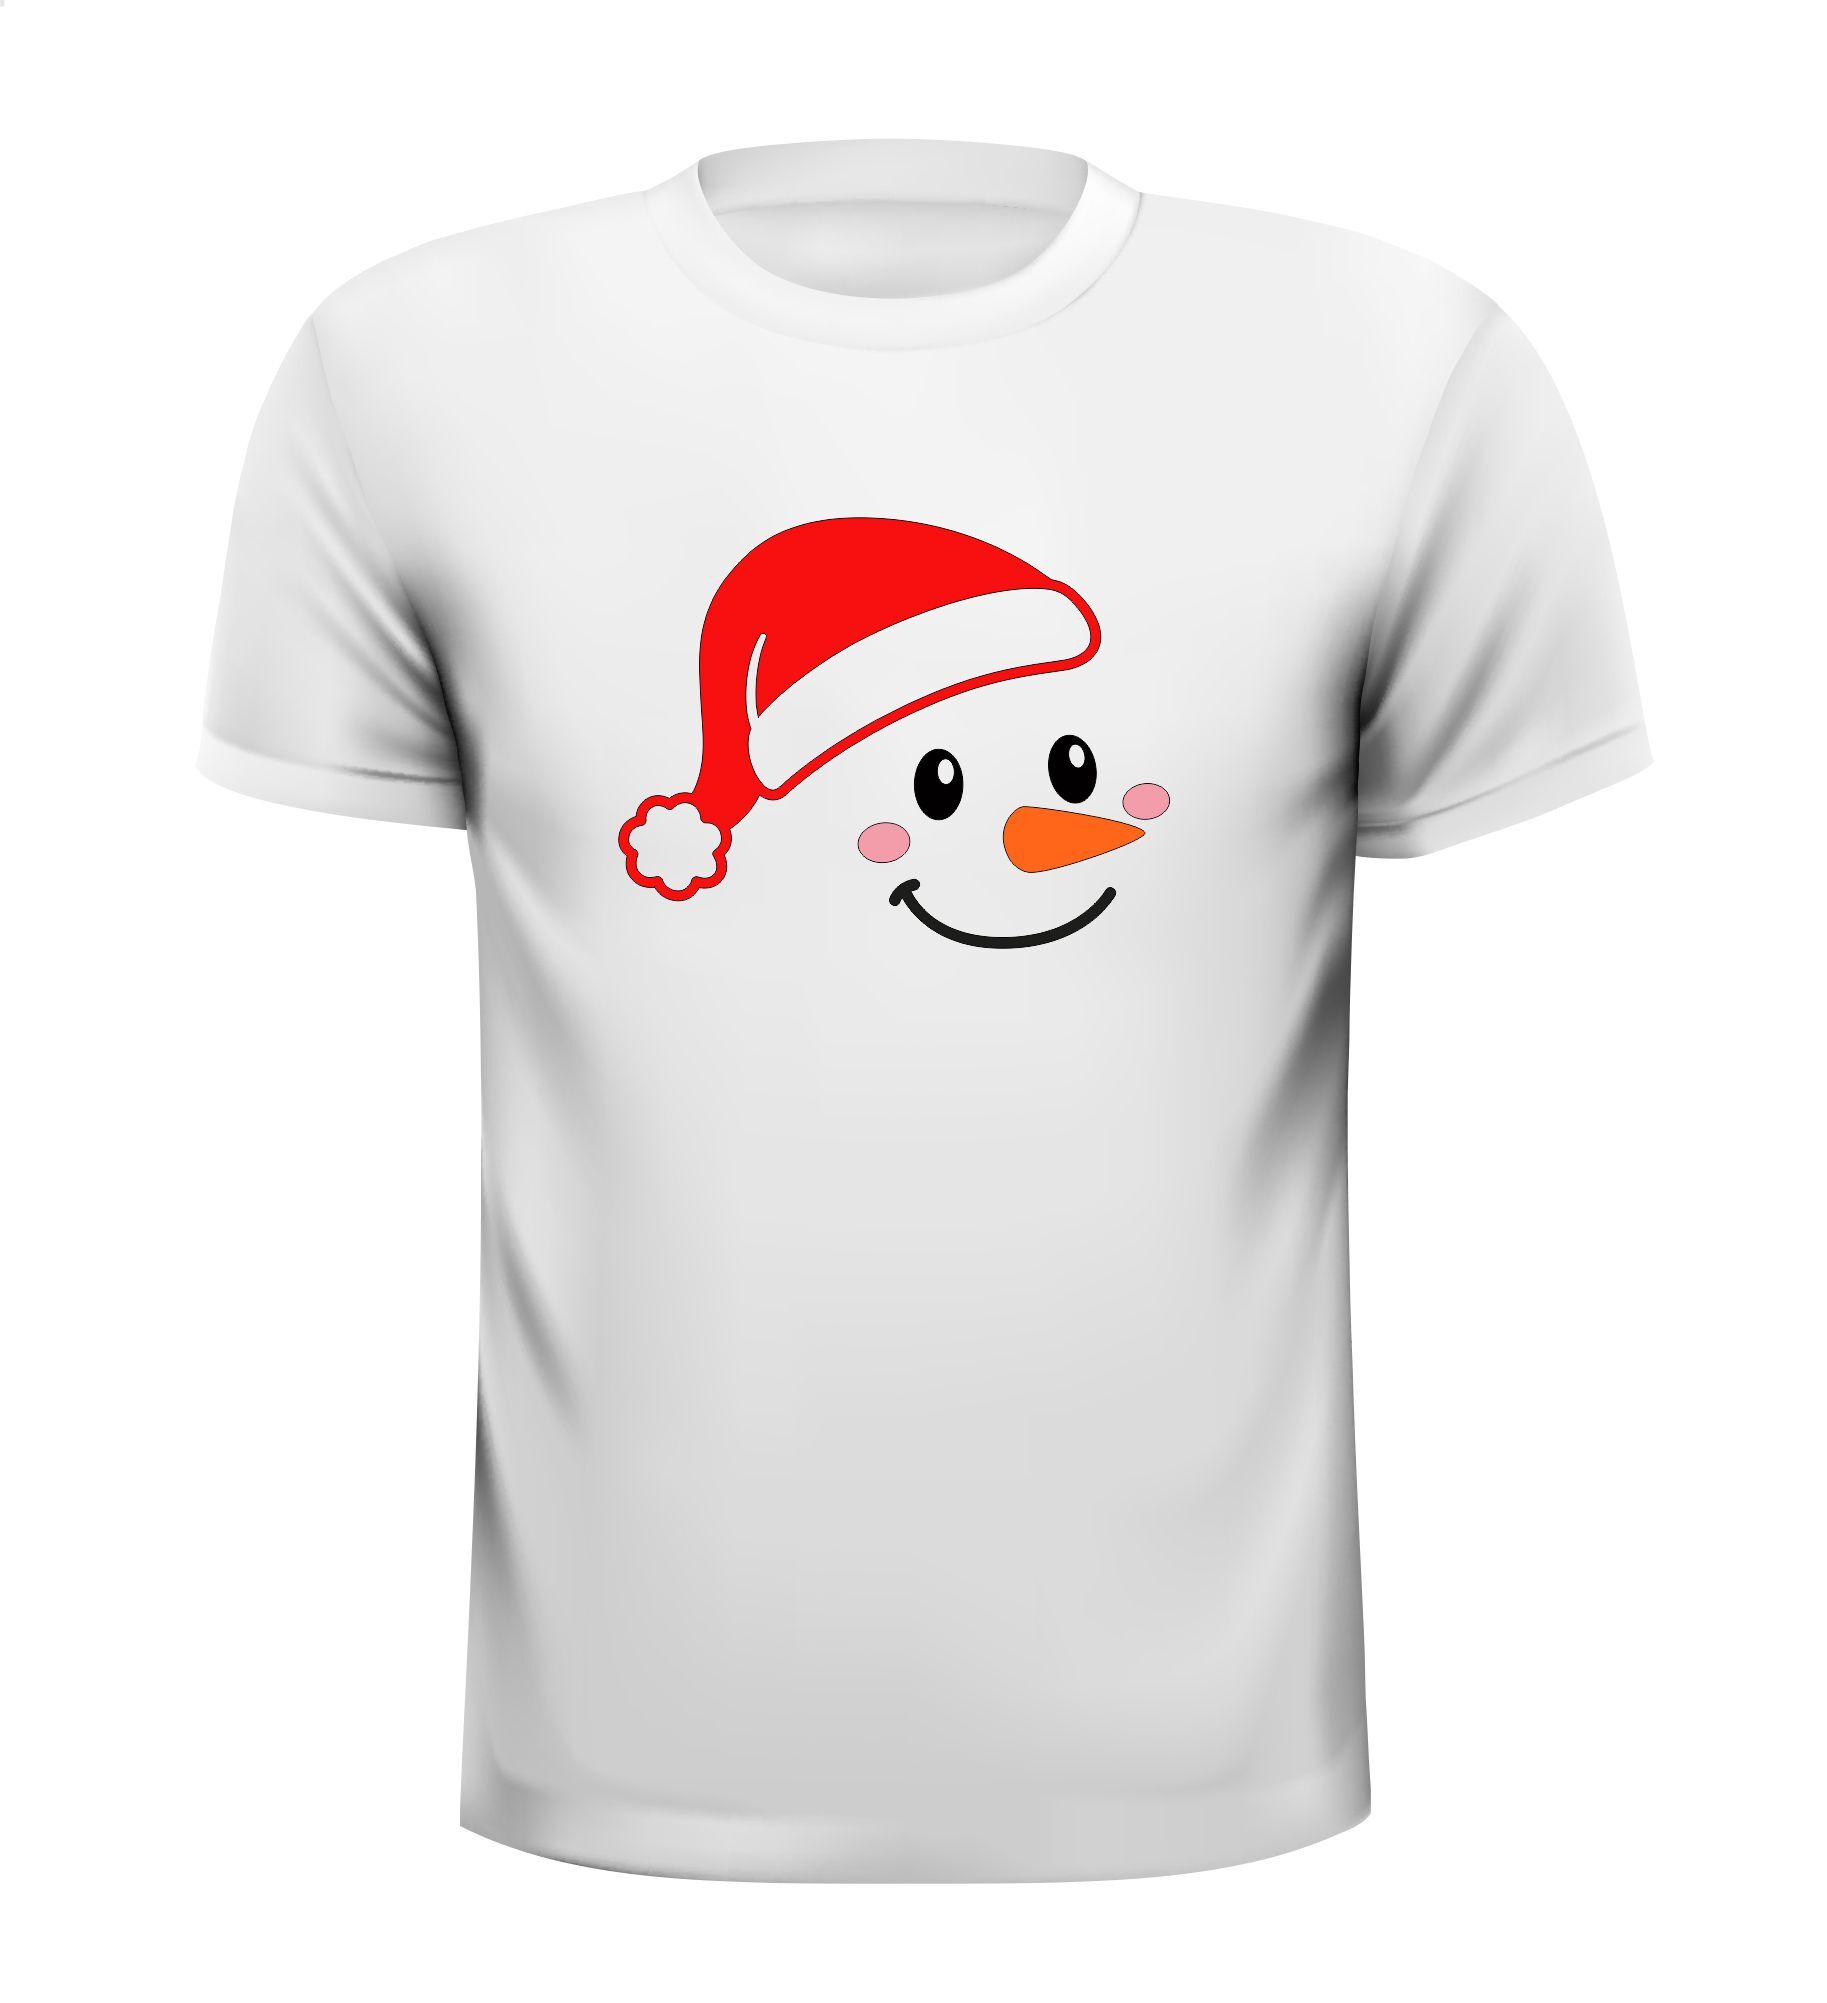 T-shirt met sneeuwpop met kerst muts op